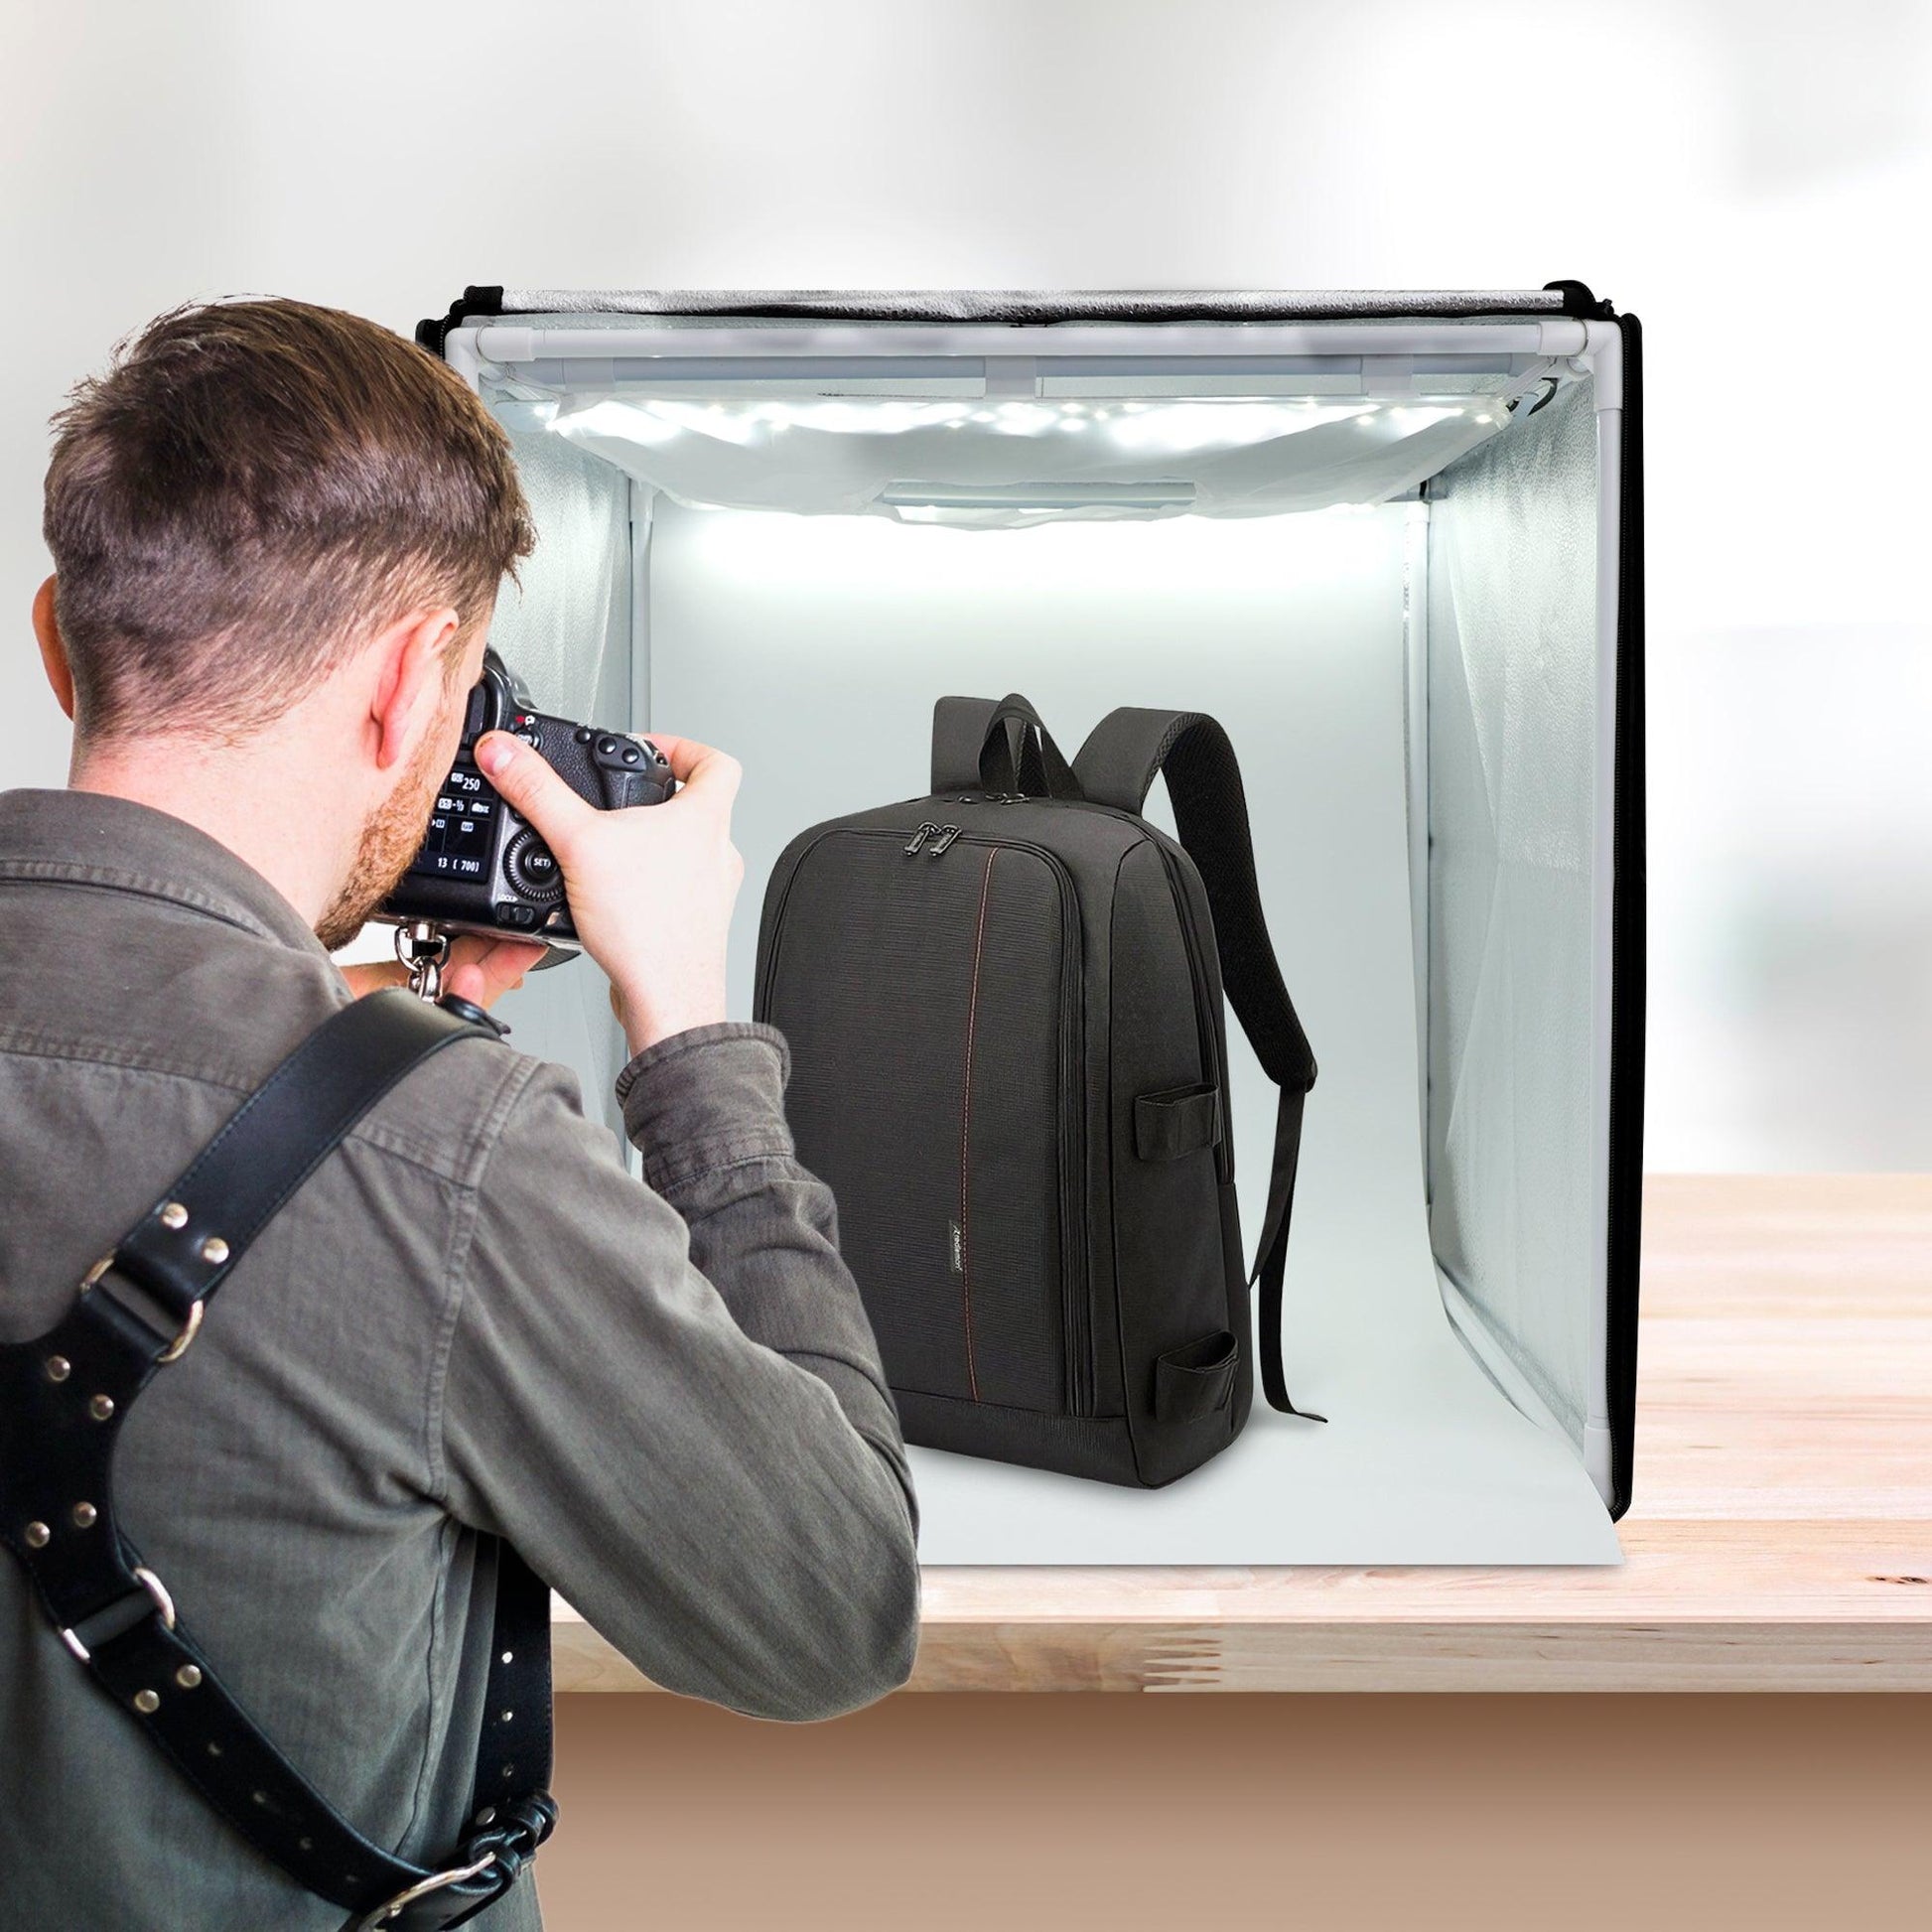 Caja de Luz para Fotografía Profesional Extra Grande (80x80 cms) - Redlemon